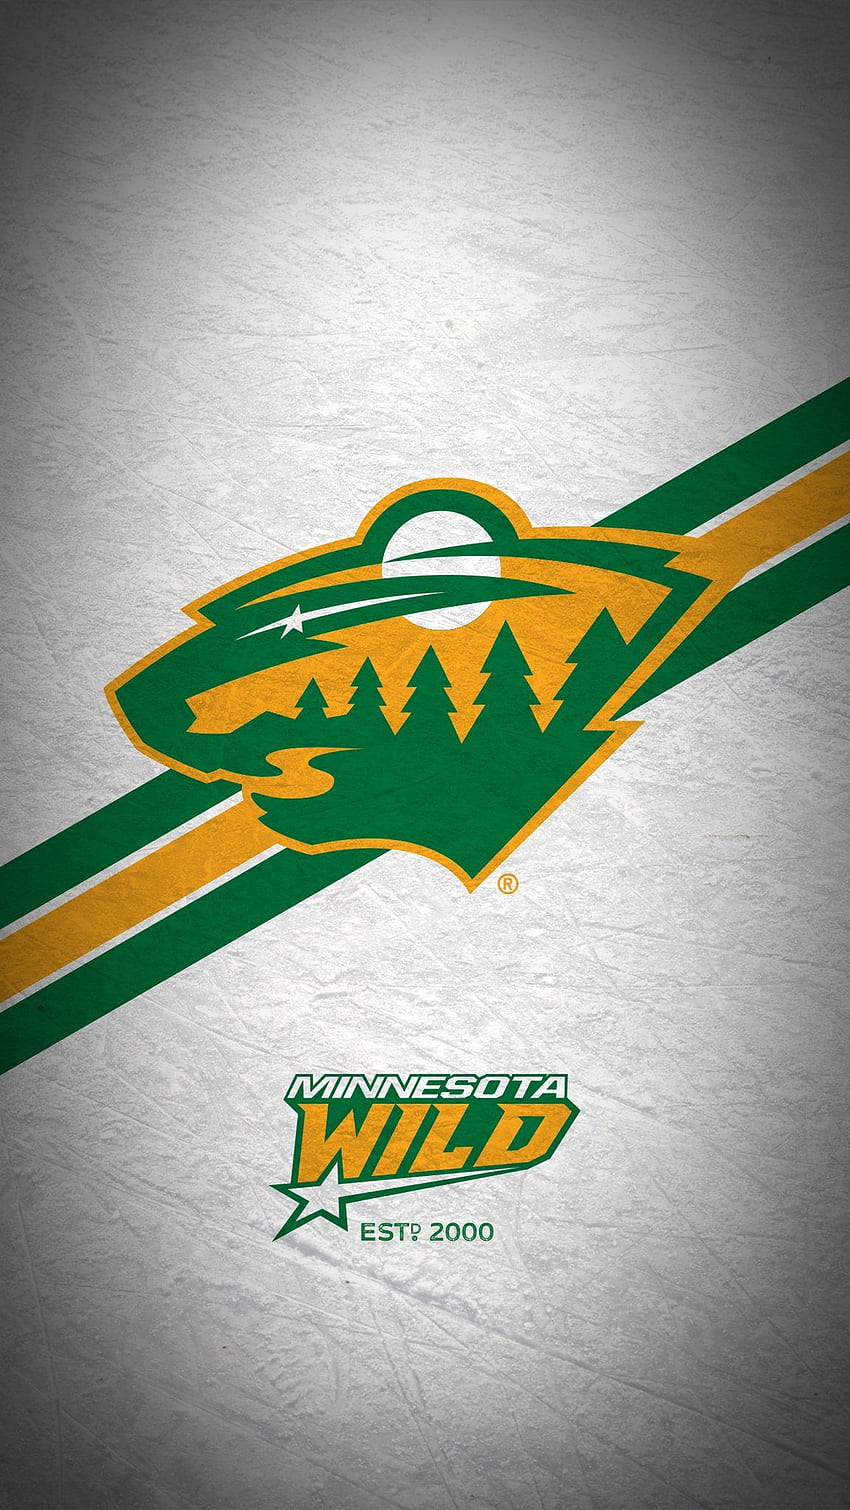 Minnesota Wild on Twitter. Minnesota wild, Minnesota north stars, Nhl, Wild Logo HD phone wallpaper